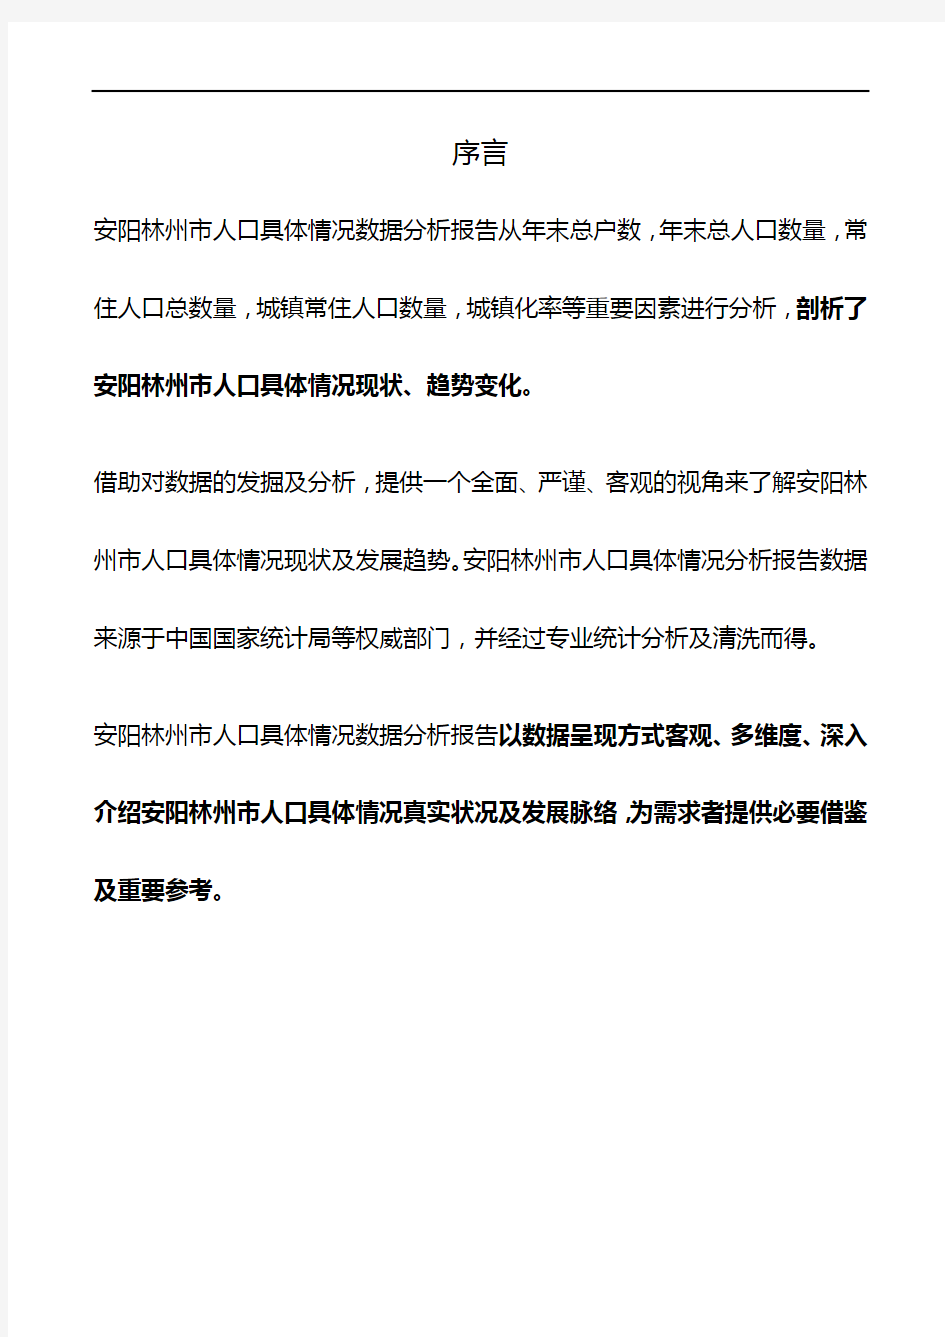 河南省安阳林州市人口具体情况数据分析报告2019版